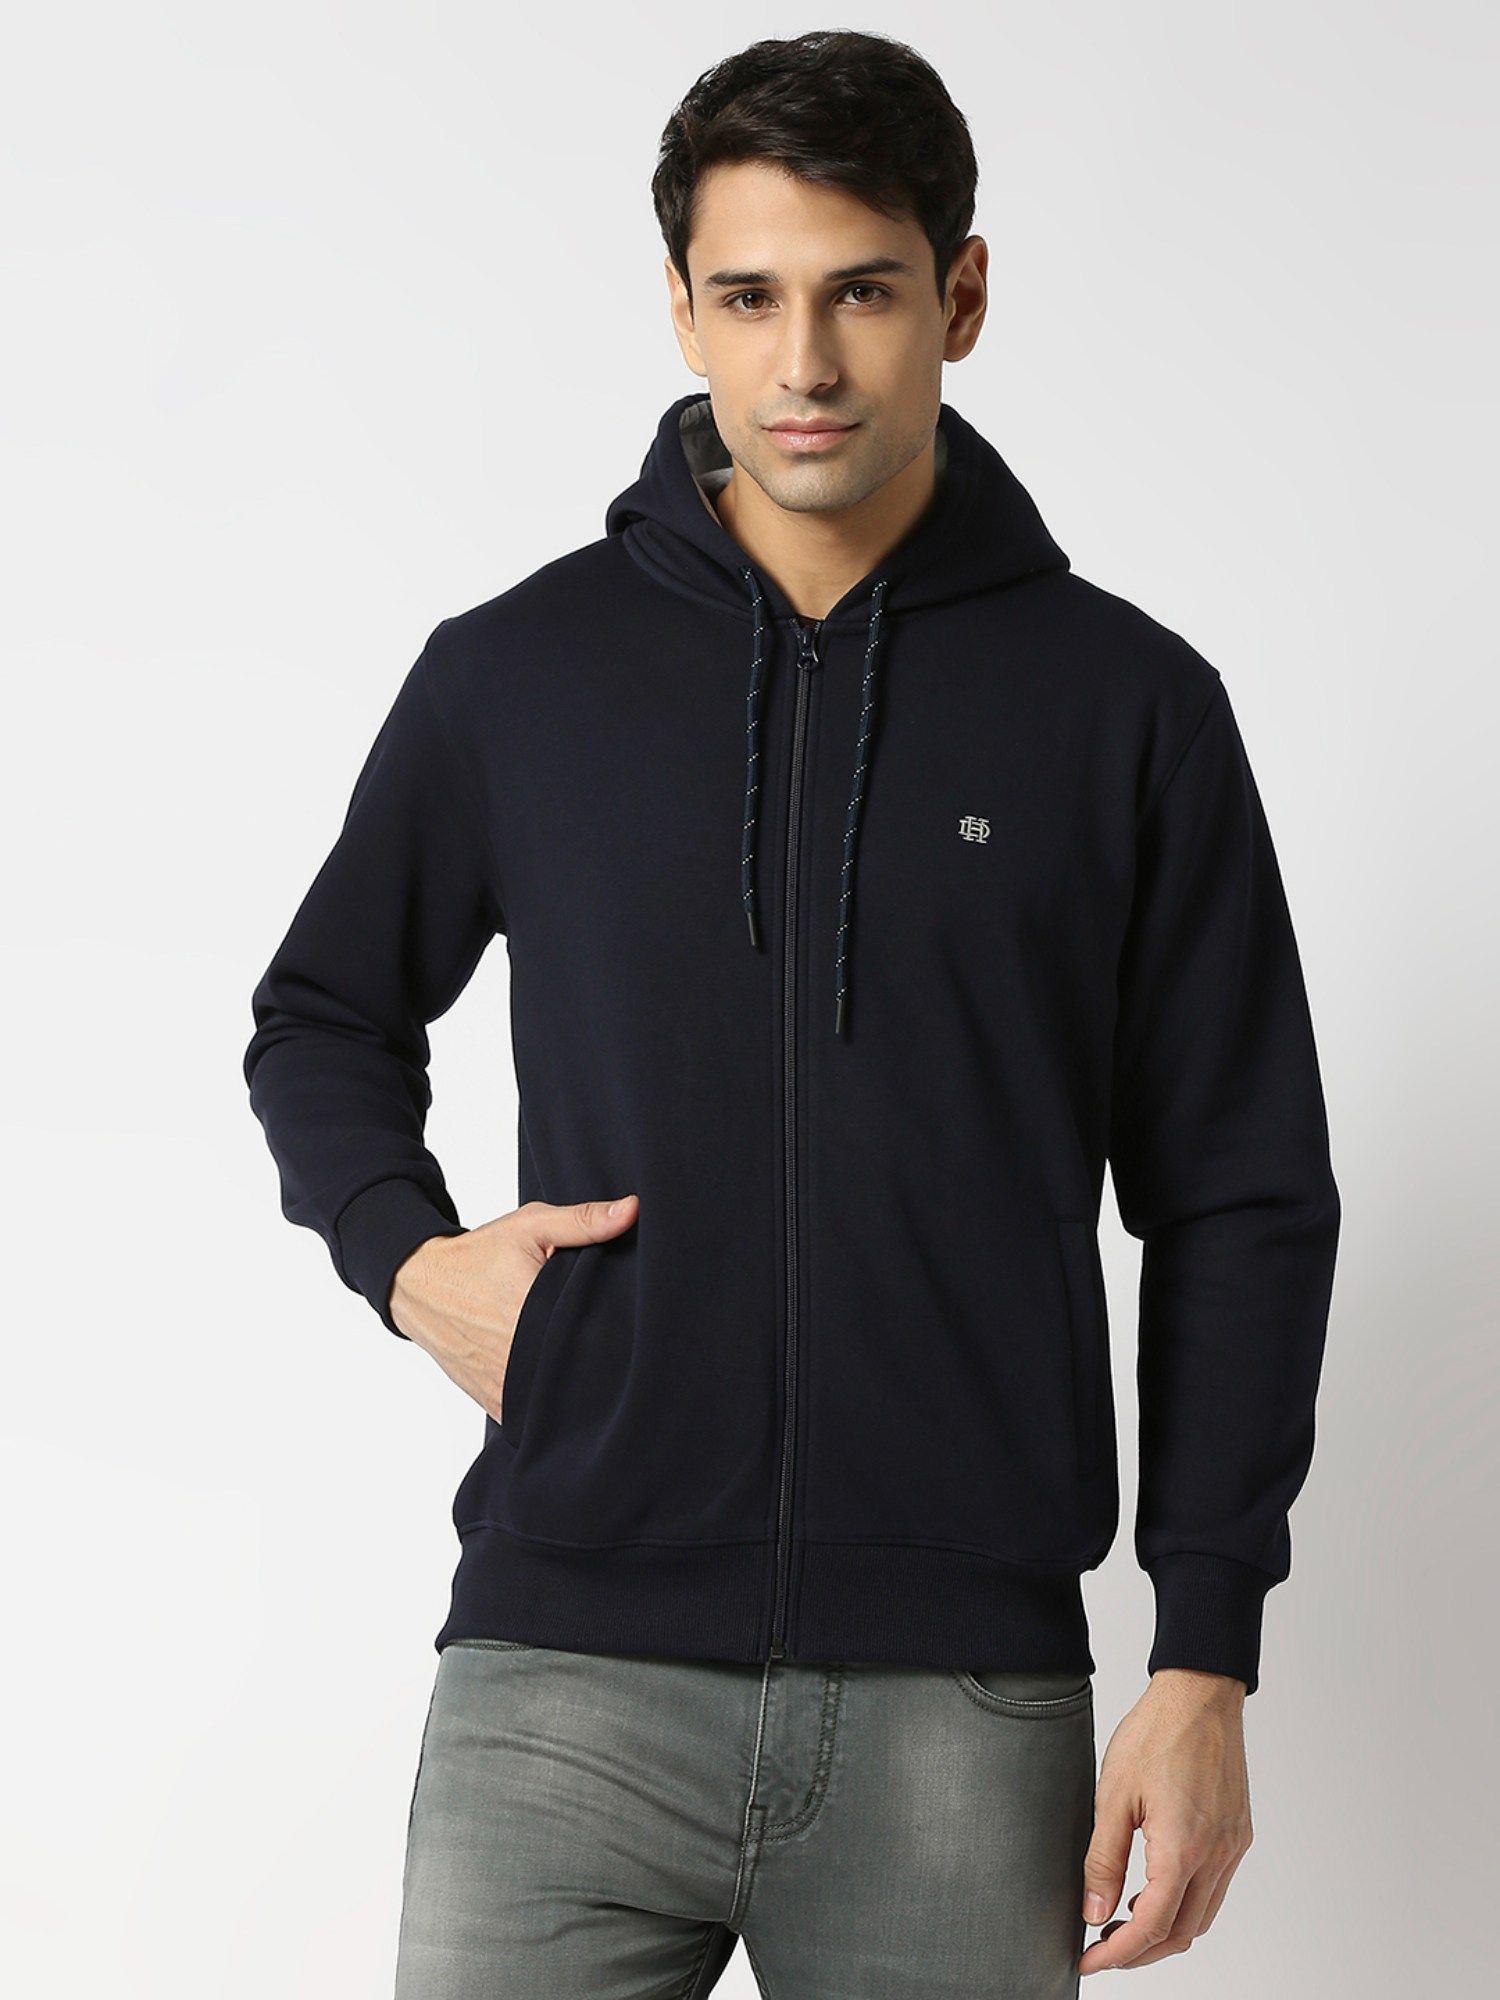 full sleeves navy blue full zip fleece hoodie